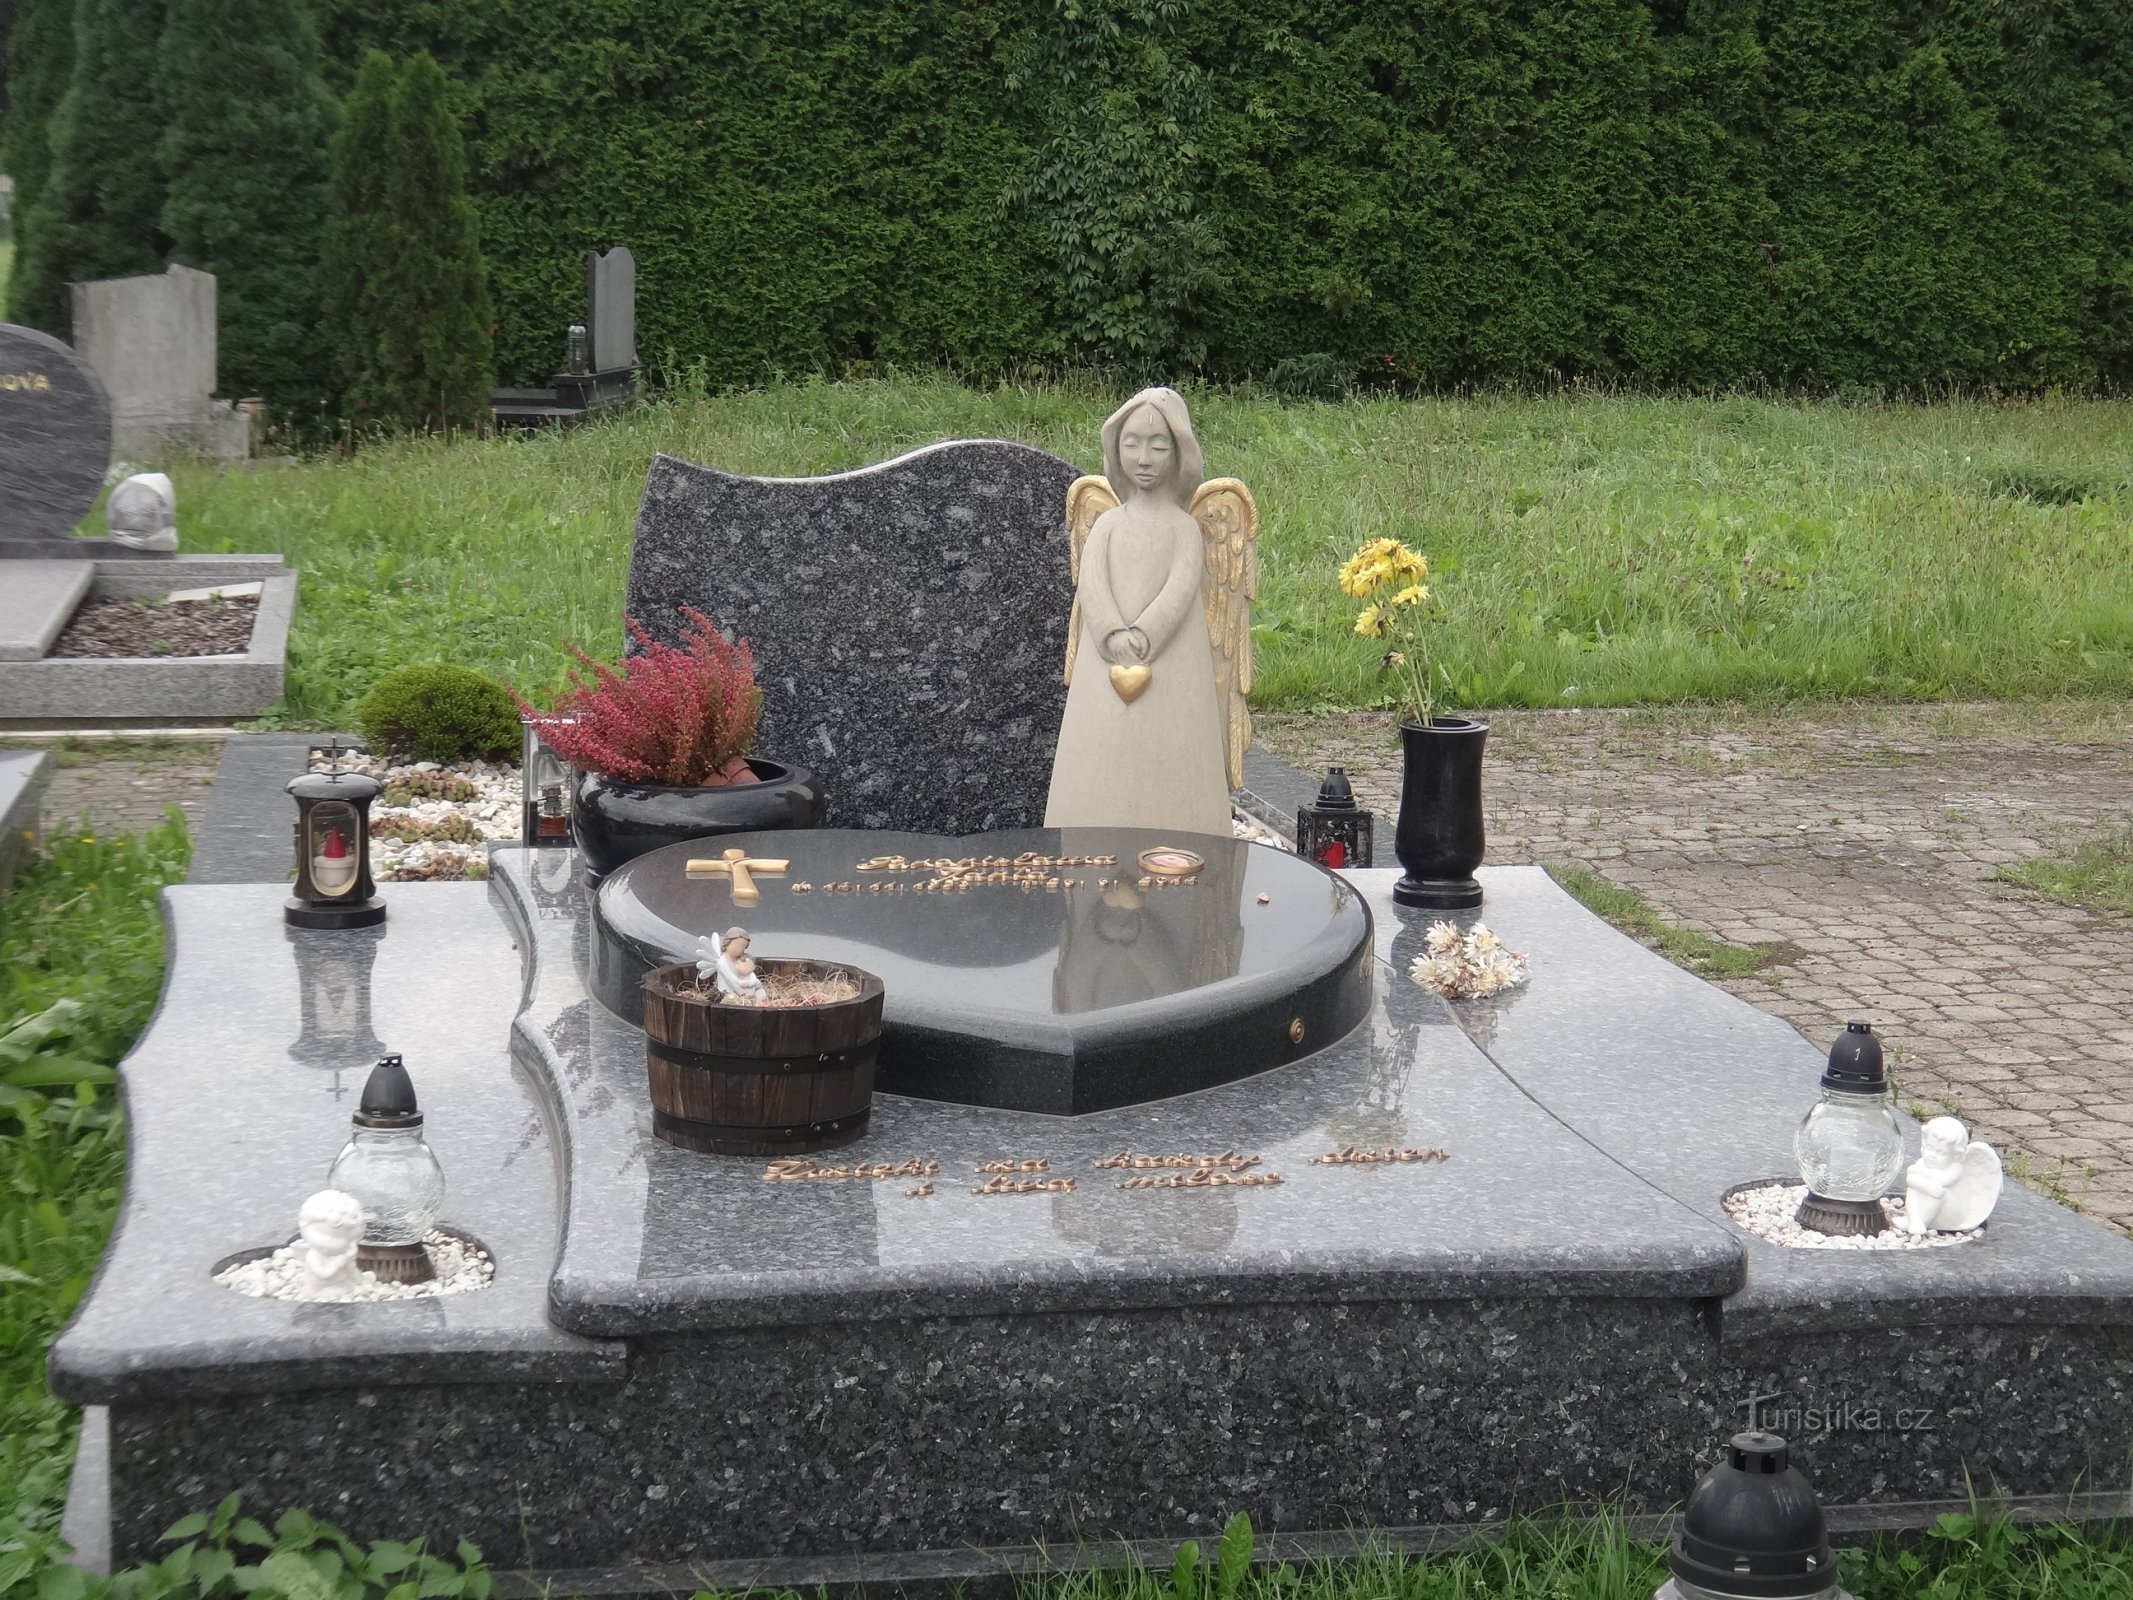 Jablunkov - cemetery